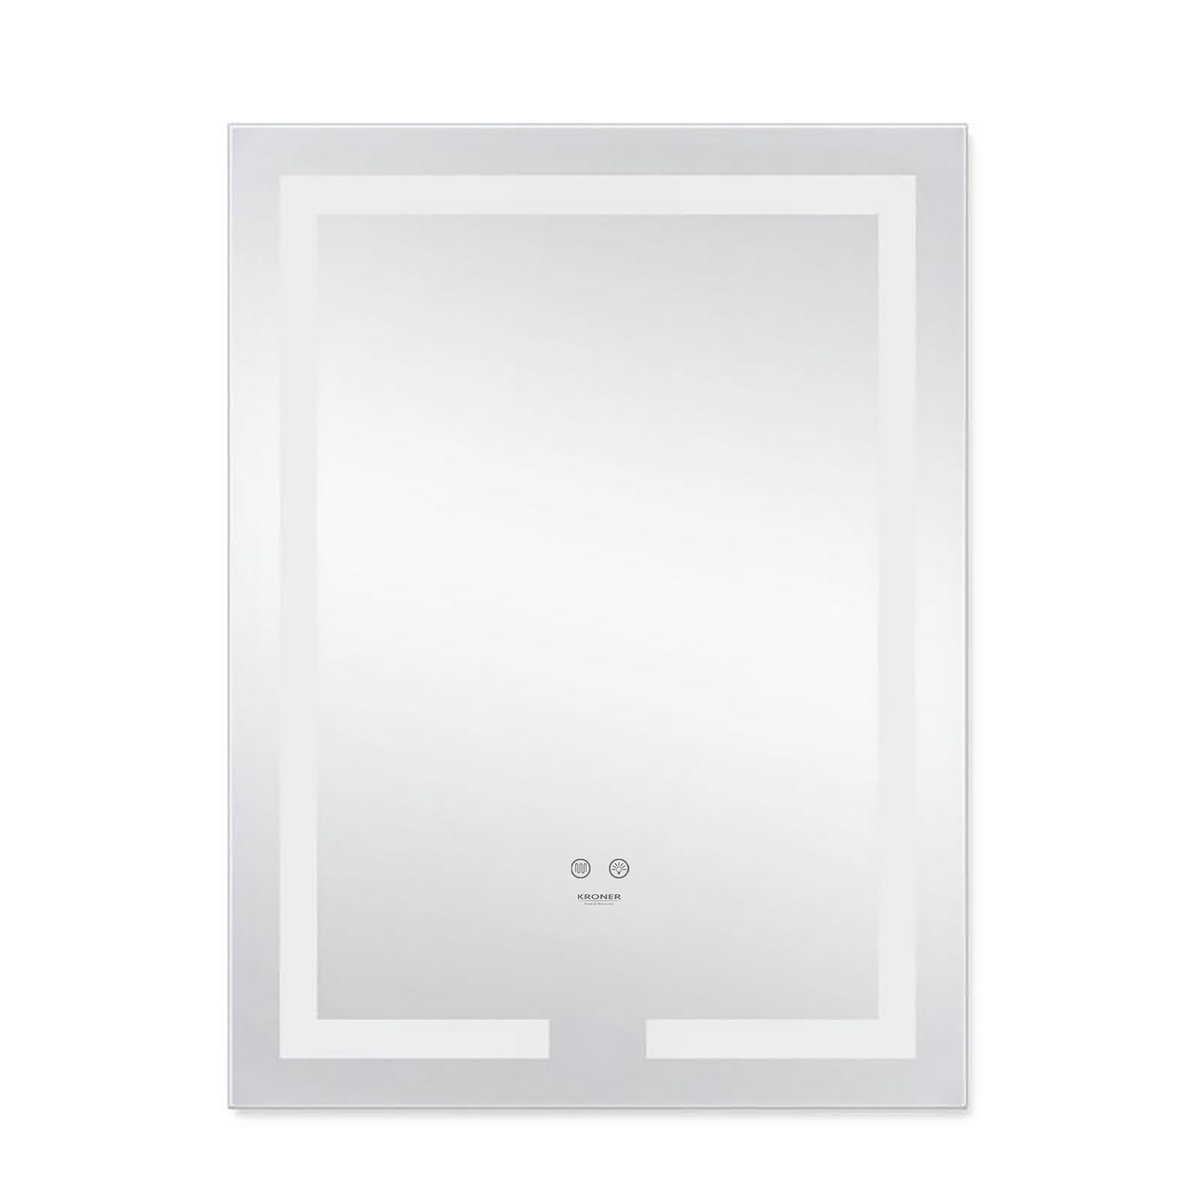 Зеркало в ванную KRONER Spiegel 80x50см c подсветкой сенсорное включение антизапотевание прямоугольное CV030039